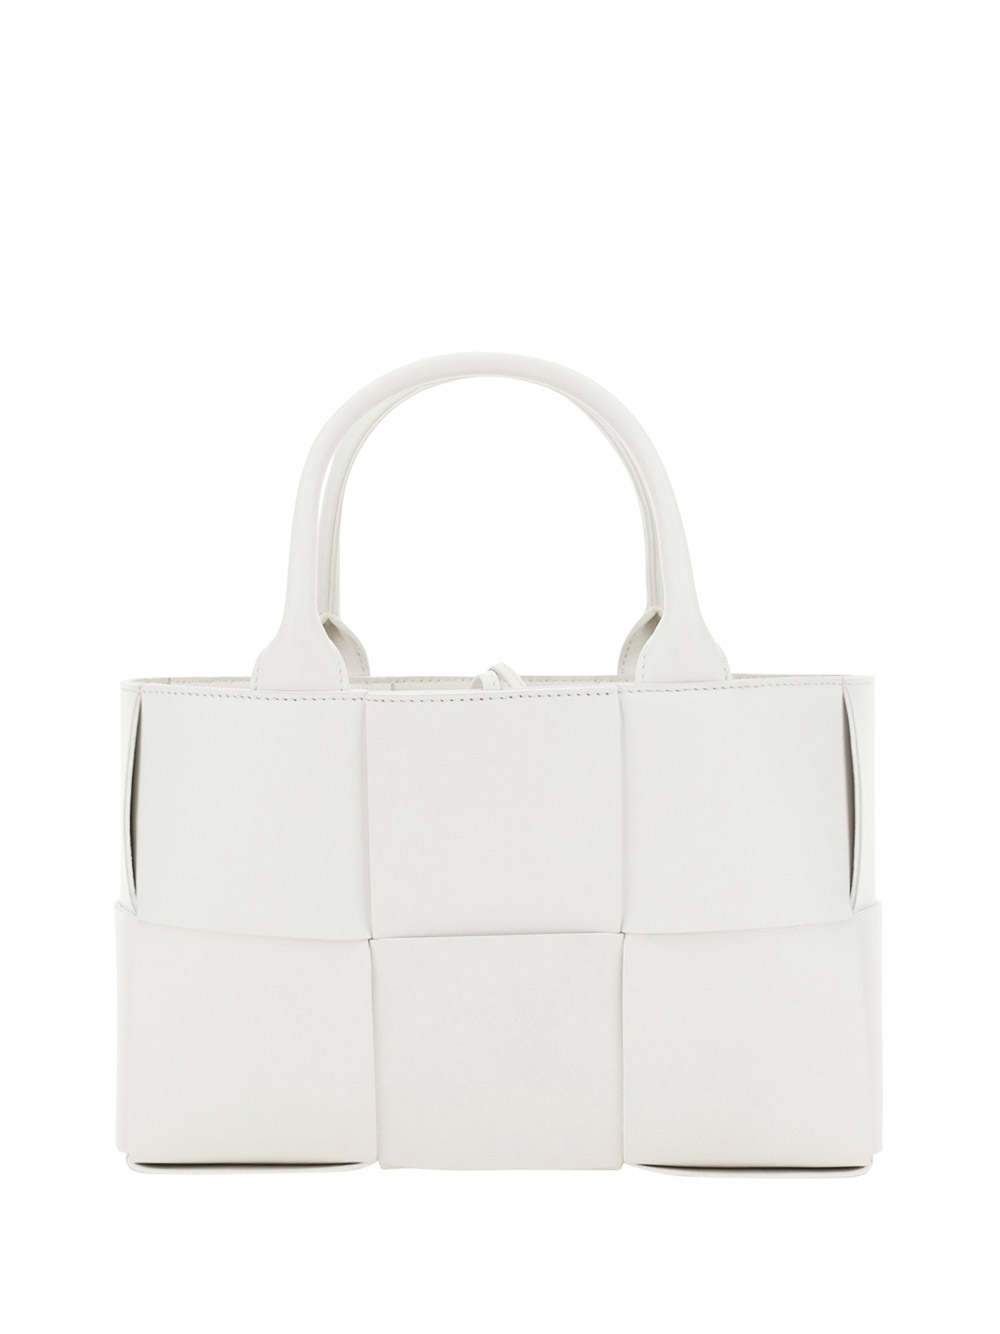 Bottega Veneta Arco Tote Handbag In White/gold